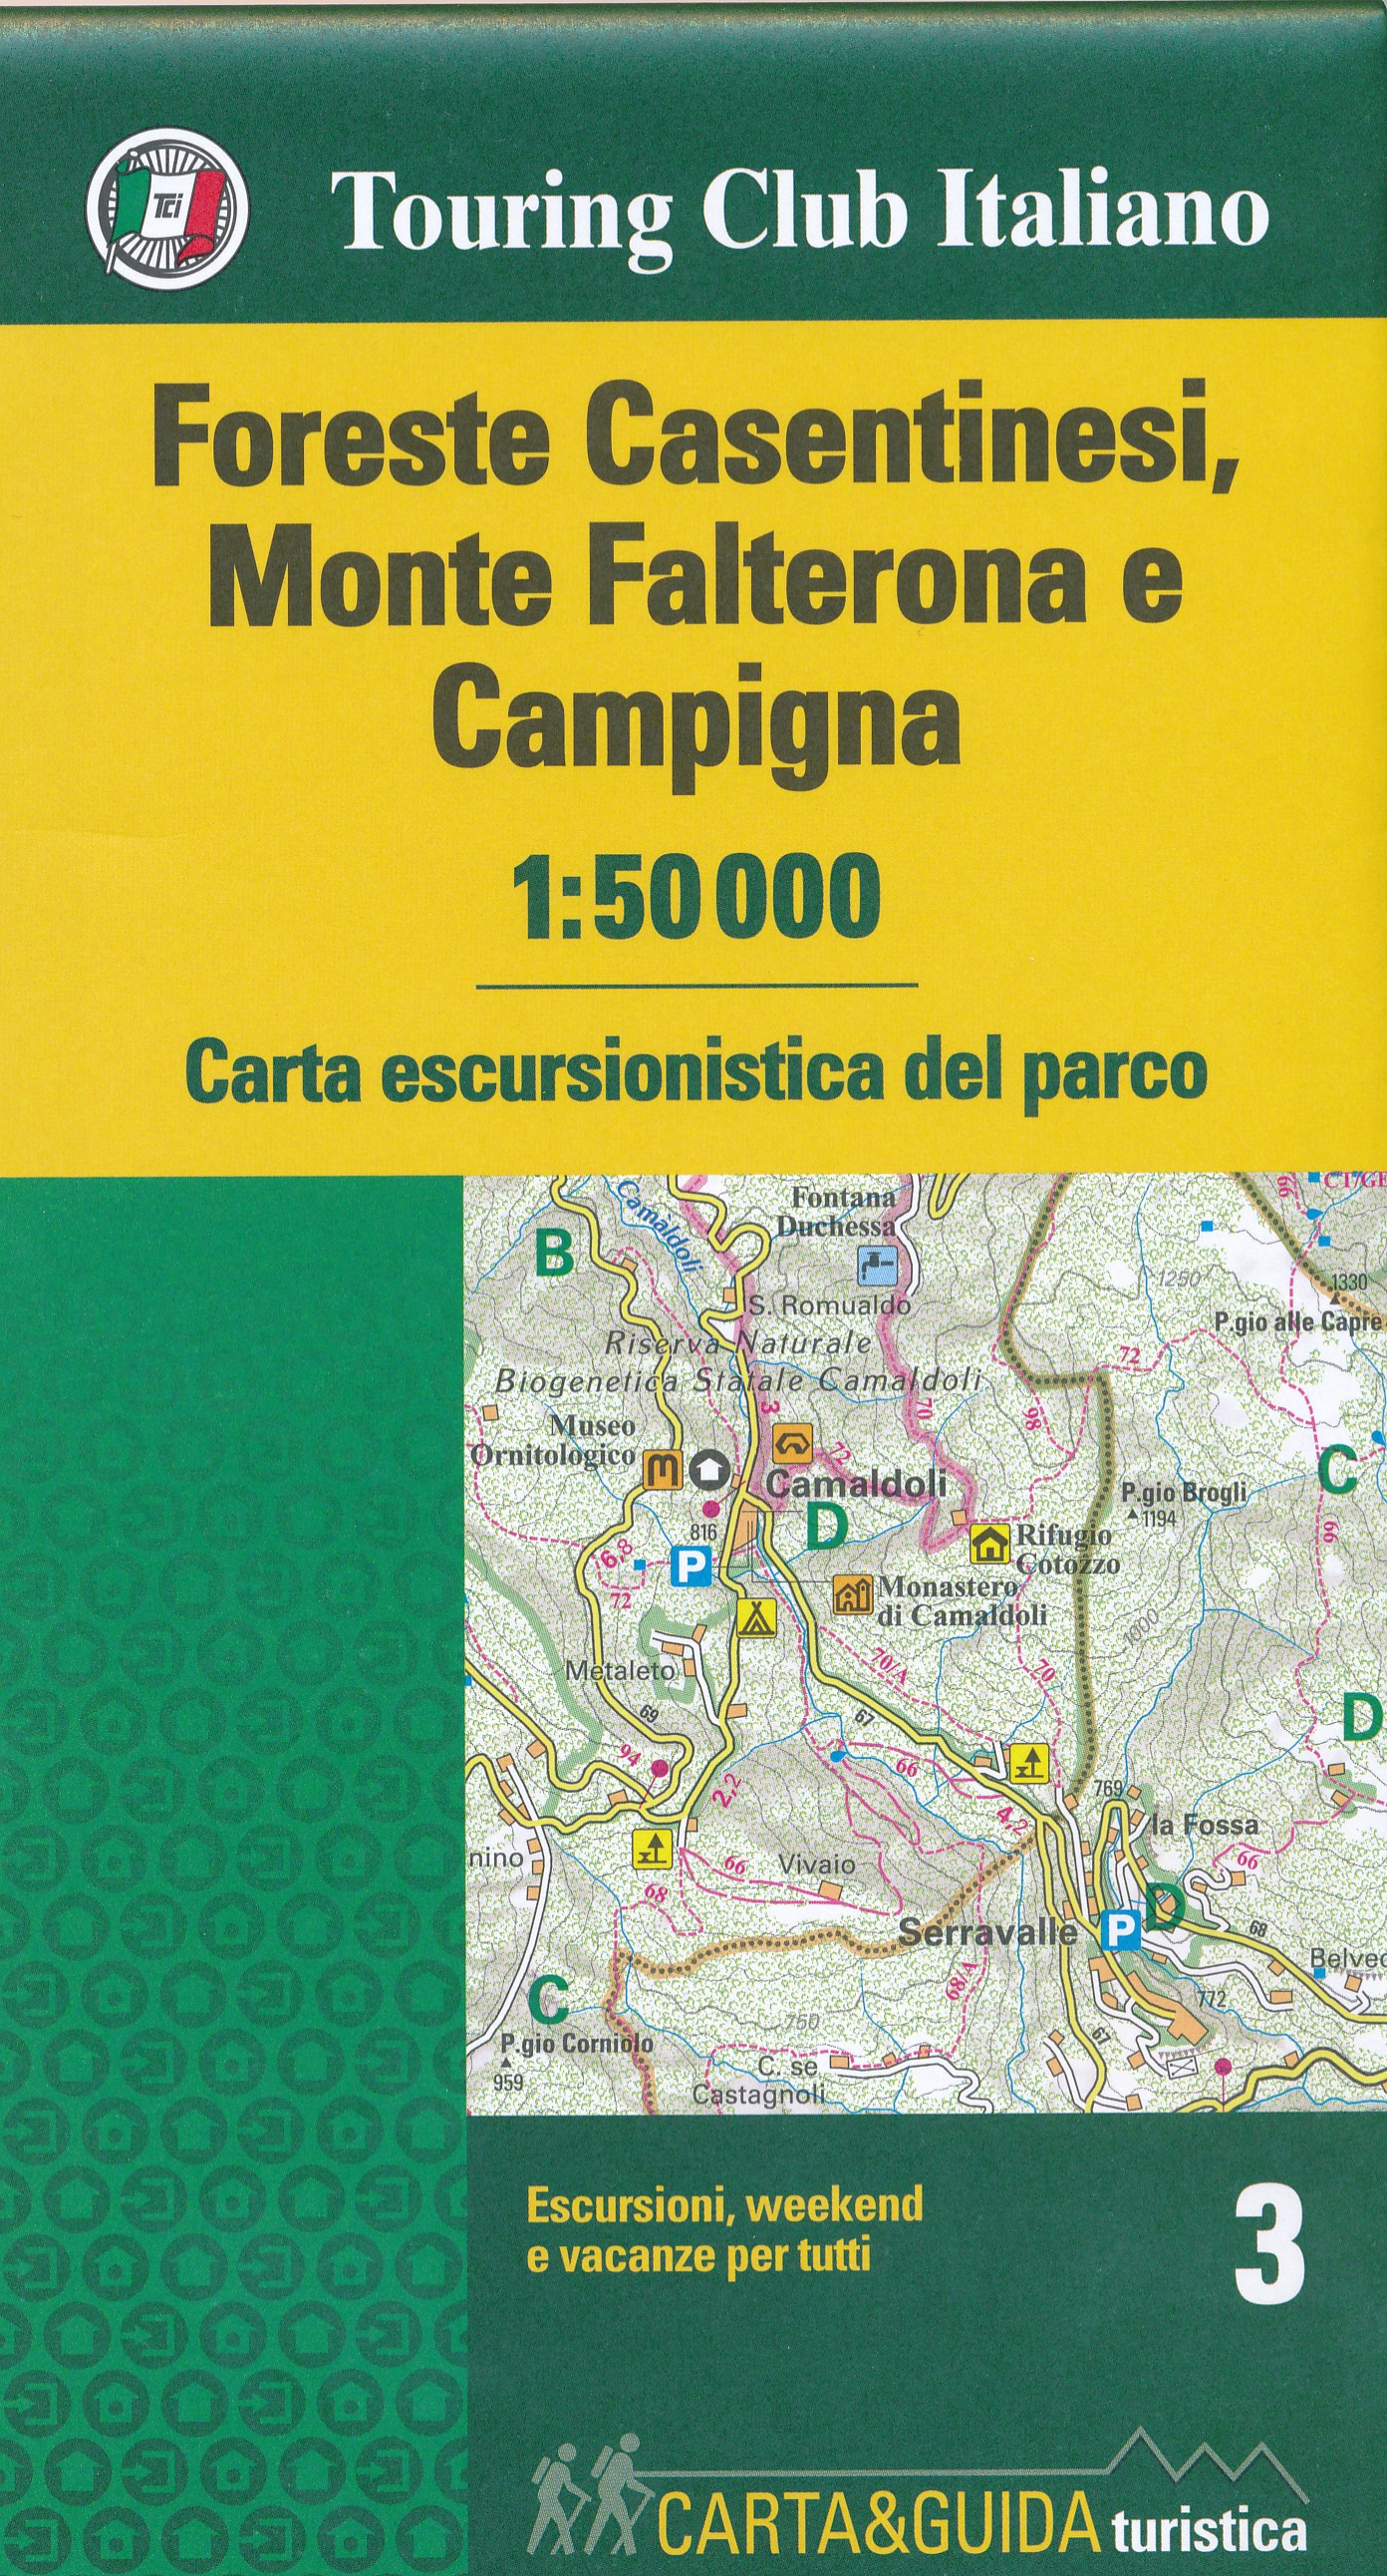 Online bestellen: Wandelkaart 3 Carta-guida Foreste Casentinesi, Monte Falterona e Campigna | Touring Club Italiano